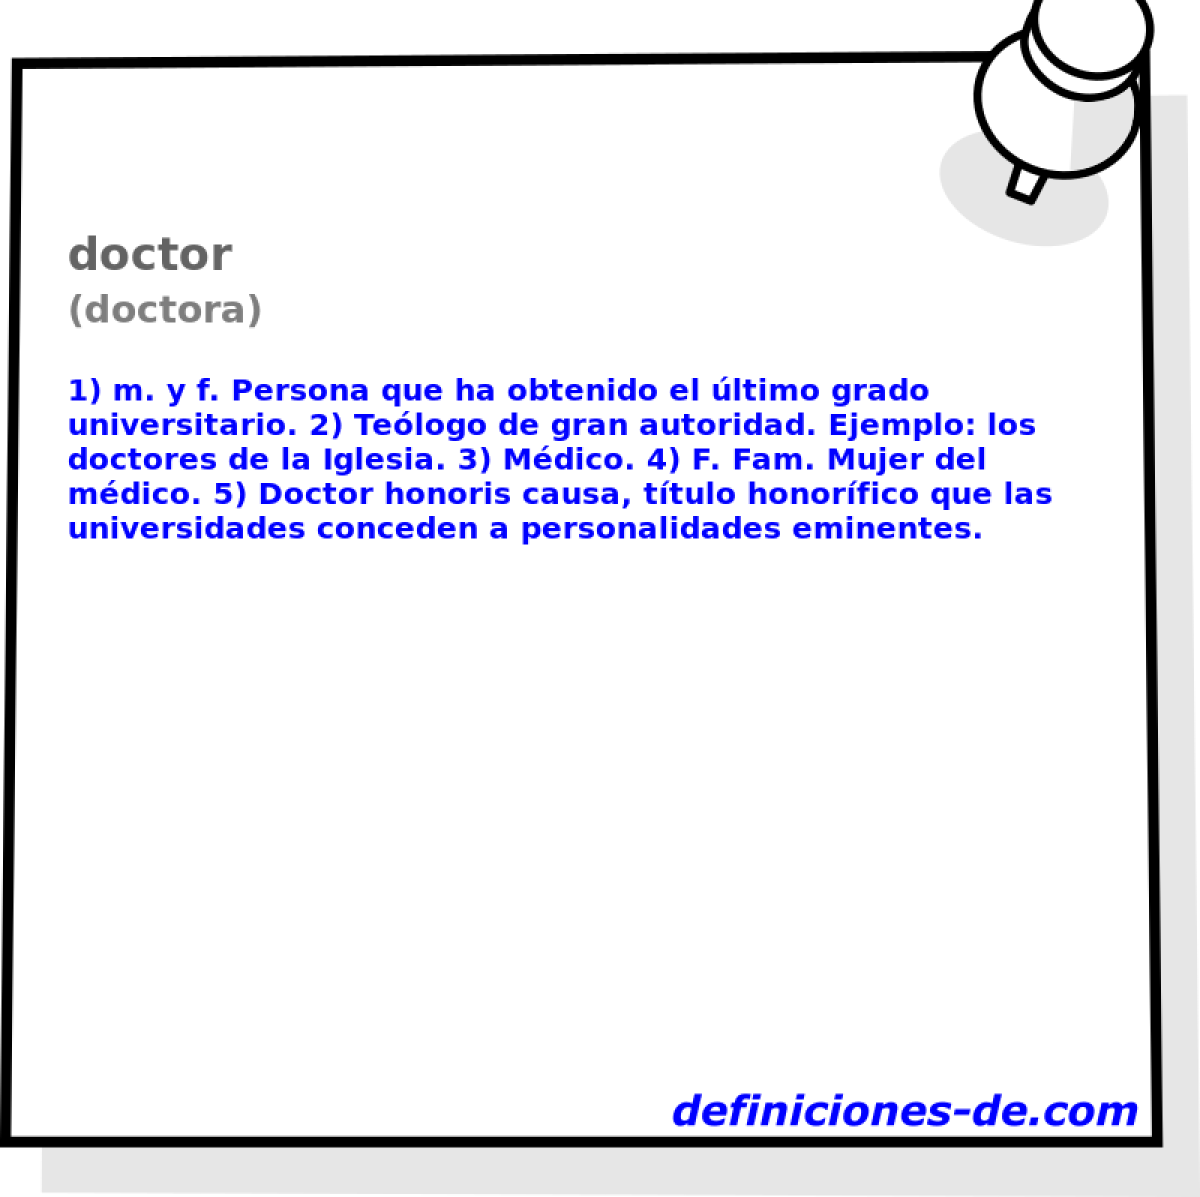 doctor (doctora)